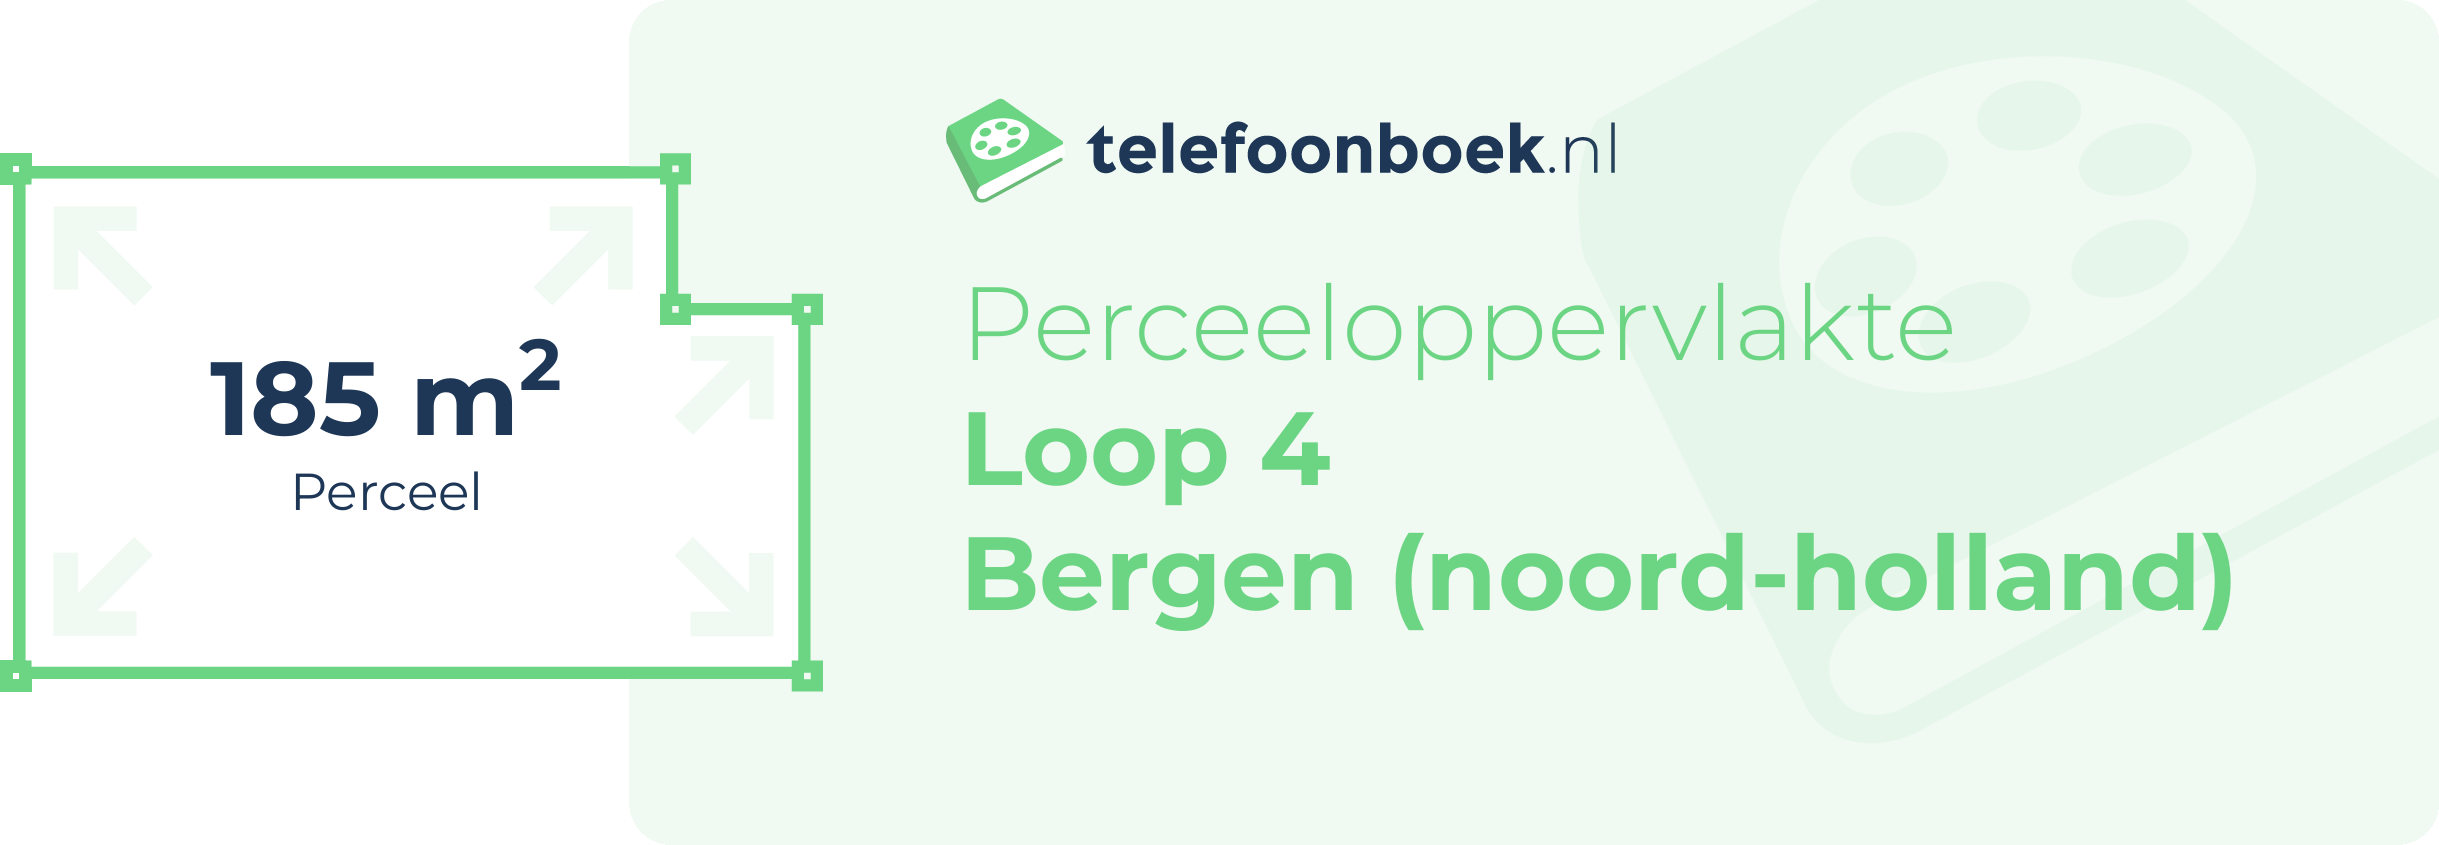 Perceeloppervlakte Loop 4 Bergen (Noord-Holland)